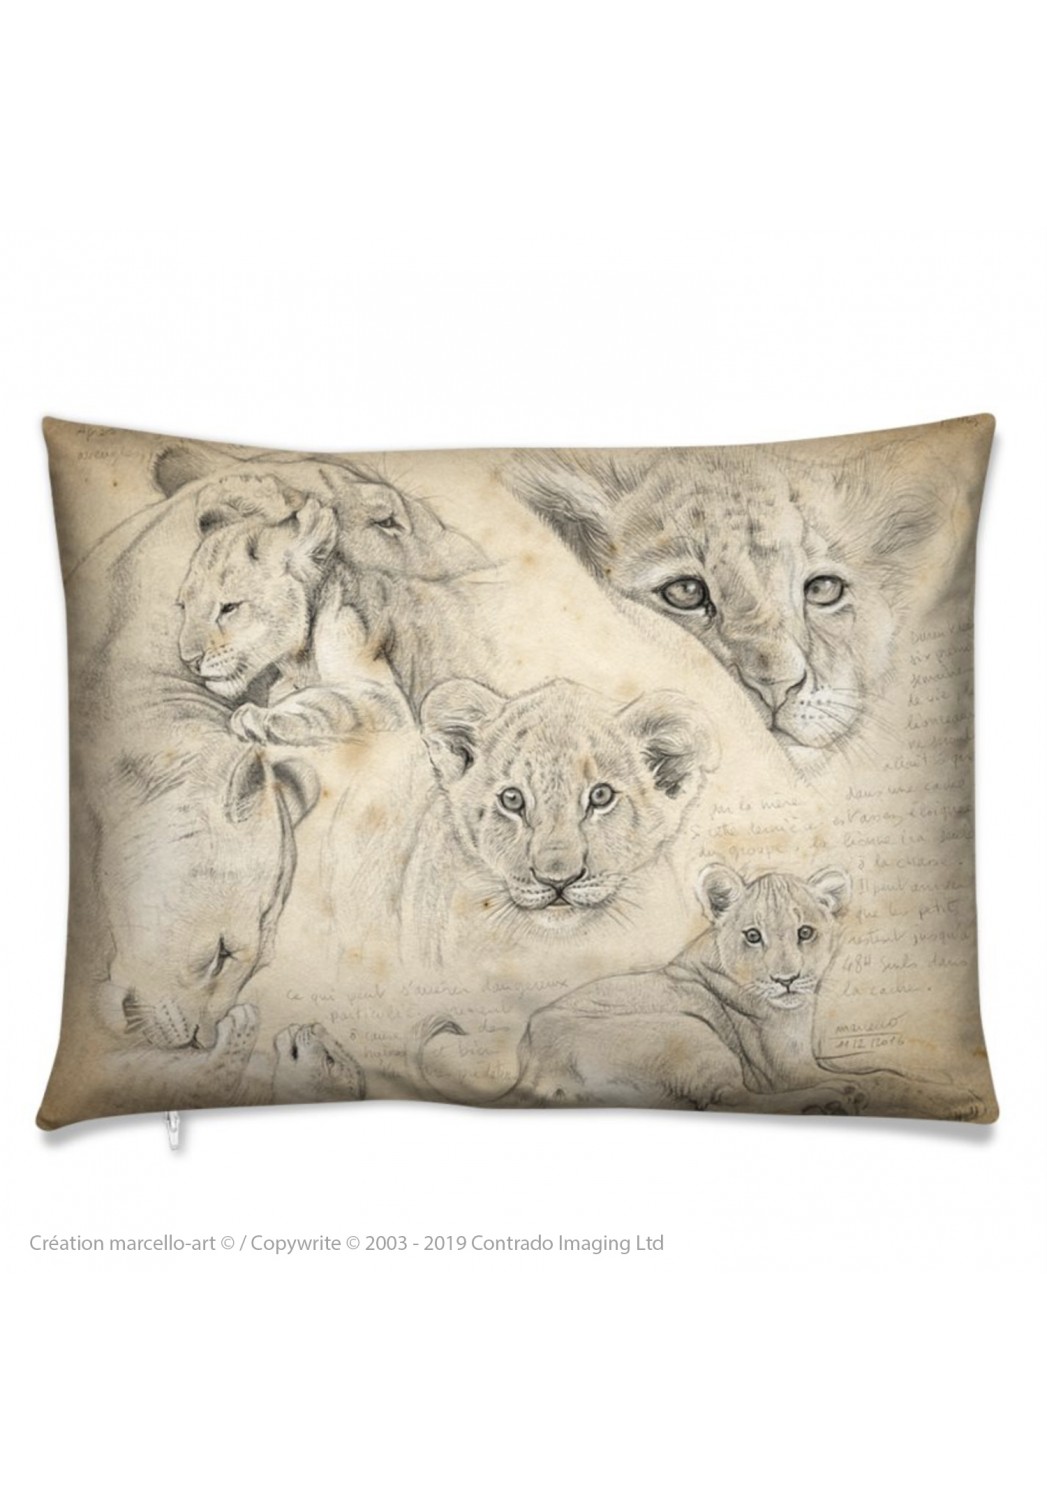 Marcello-art: Fashion accessory Cushion 330 lion cubs